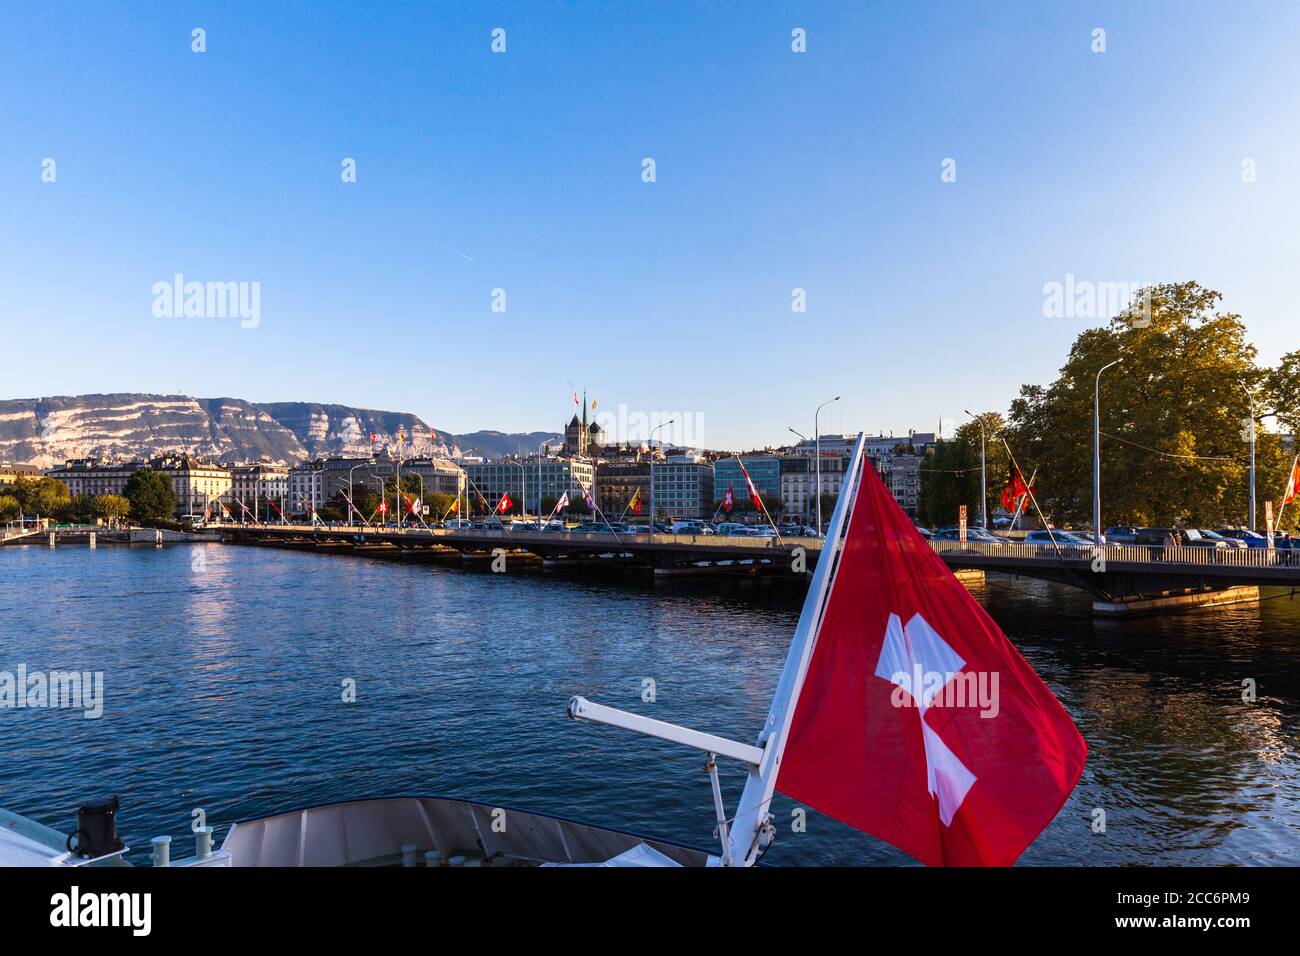 Genève, Suisse - 9 septembre 2015 - touristes prenant le bateau de croisière sur le lac de Genève au crépuscule avec vue sur le paysage urbain de Genève au coucher du soleil, Suissel Banque D'Images